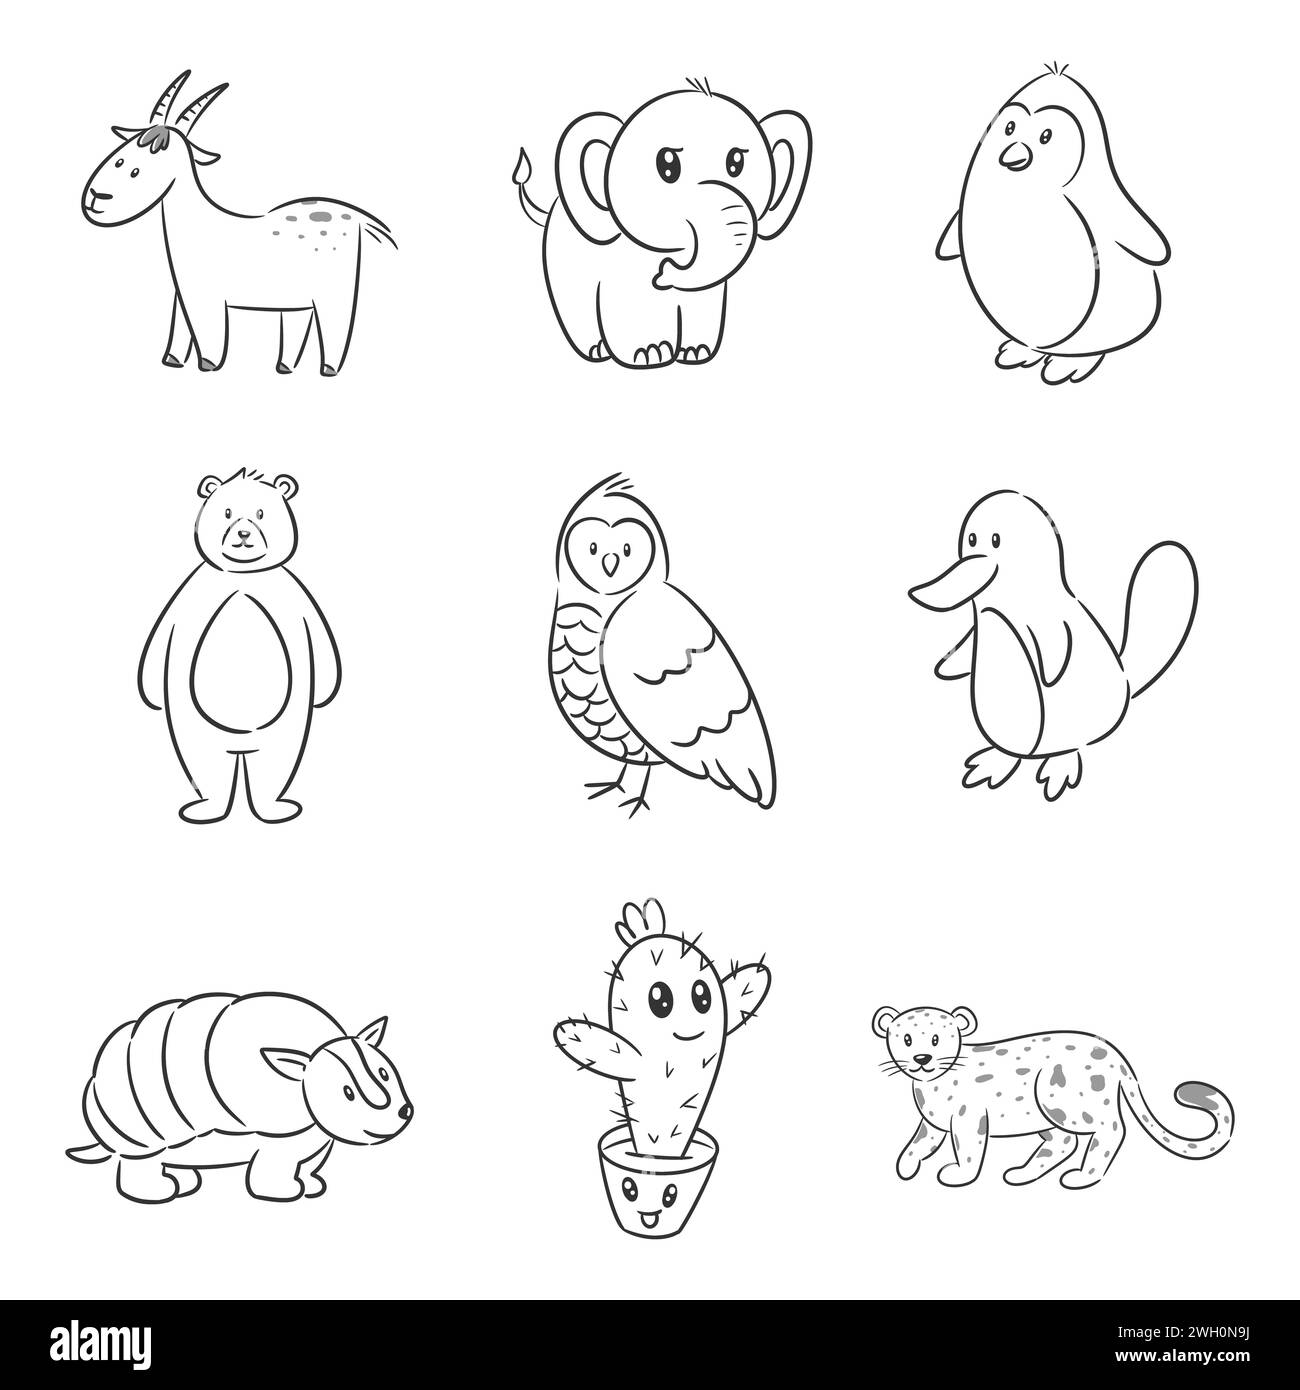 Ensemble de personnage de dessin animé animal pour la coloration Illustration de Vecteur